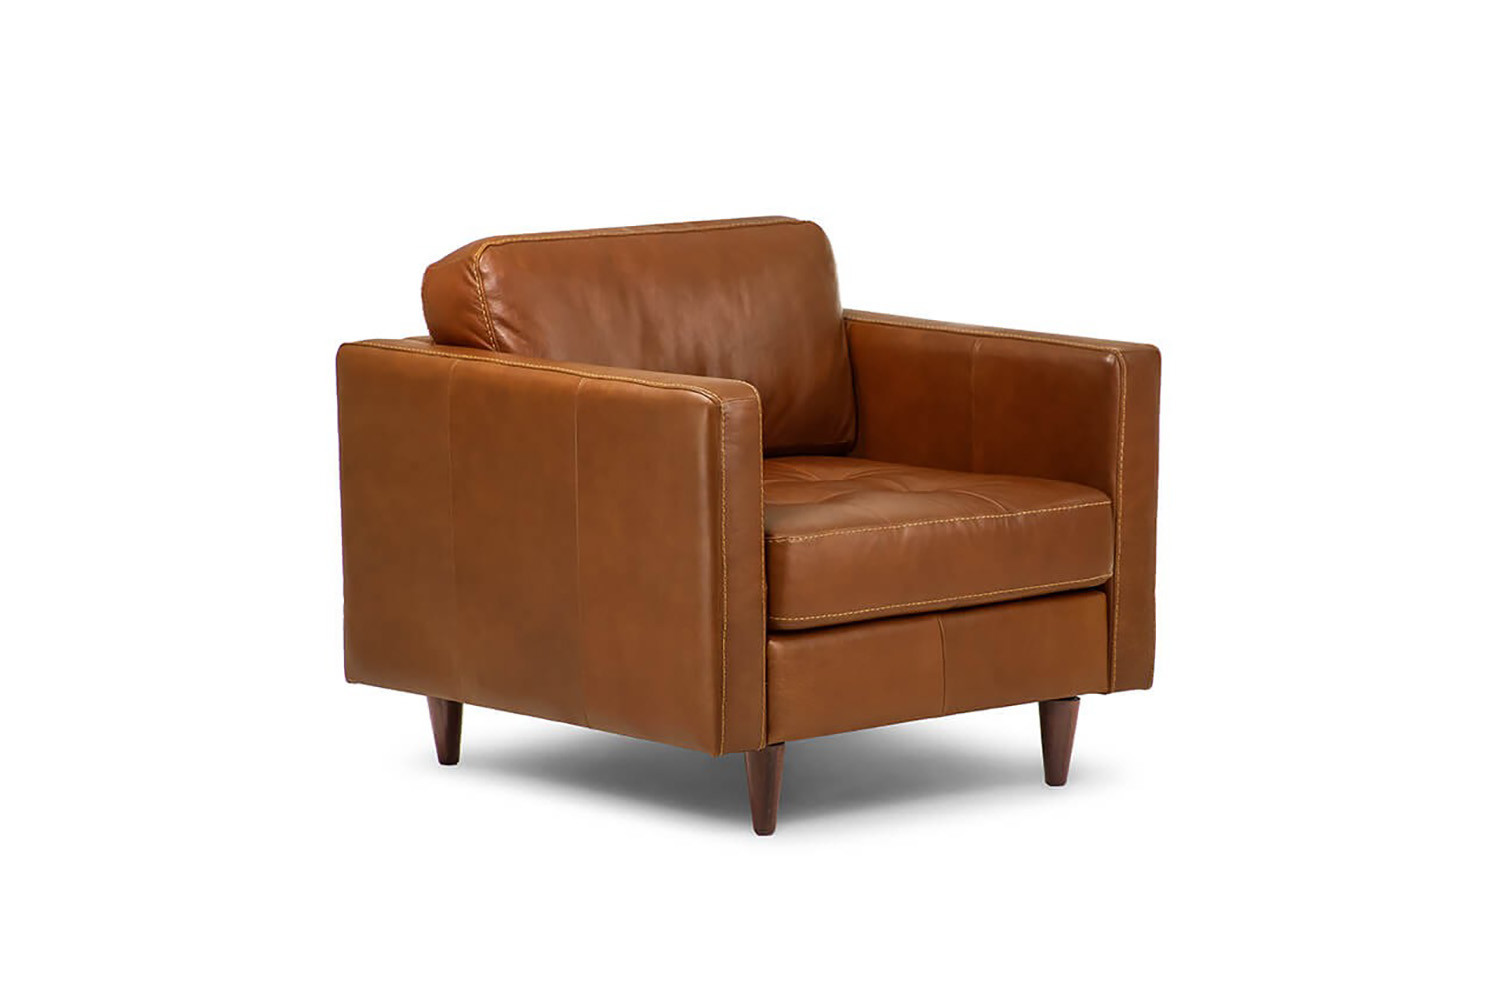 https://www.cielo.co.za/73137-large_default/hoffmann-leather-armchair-tan.jpg